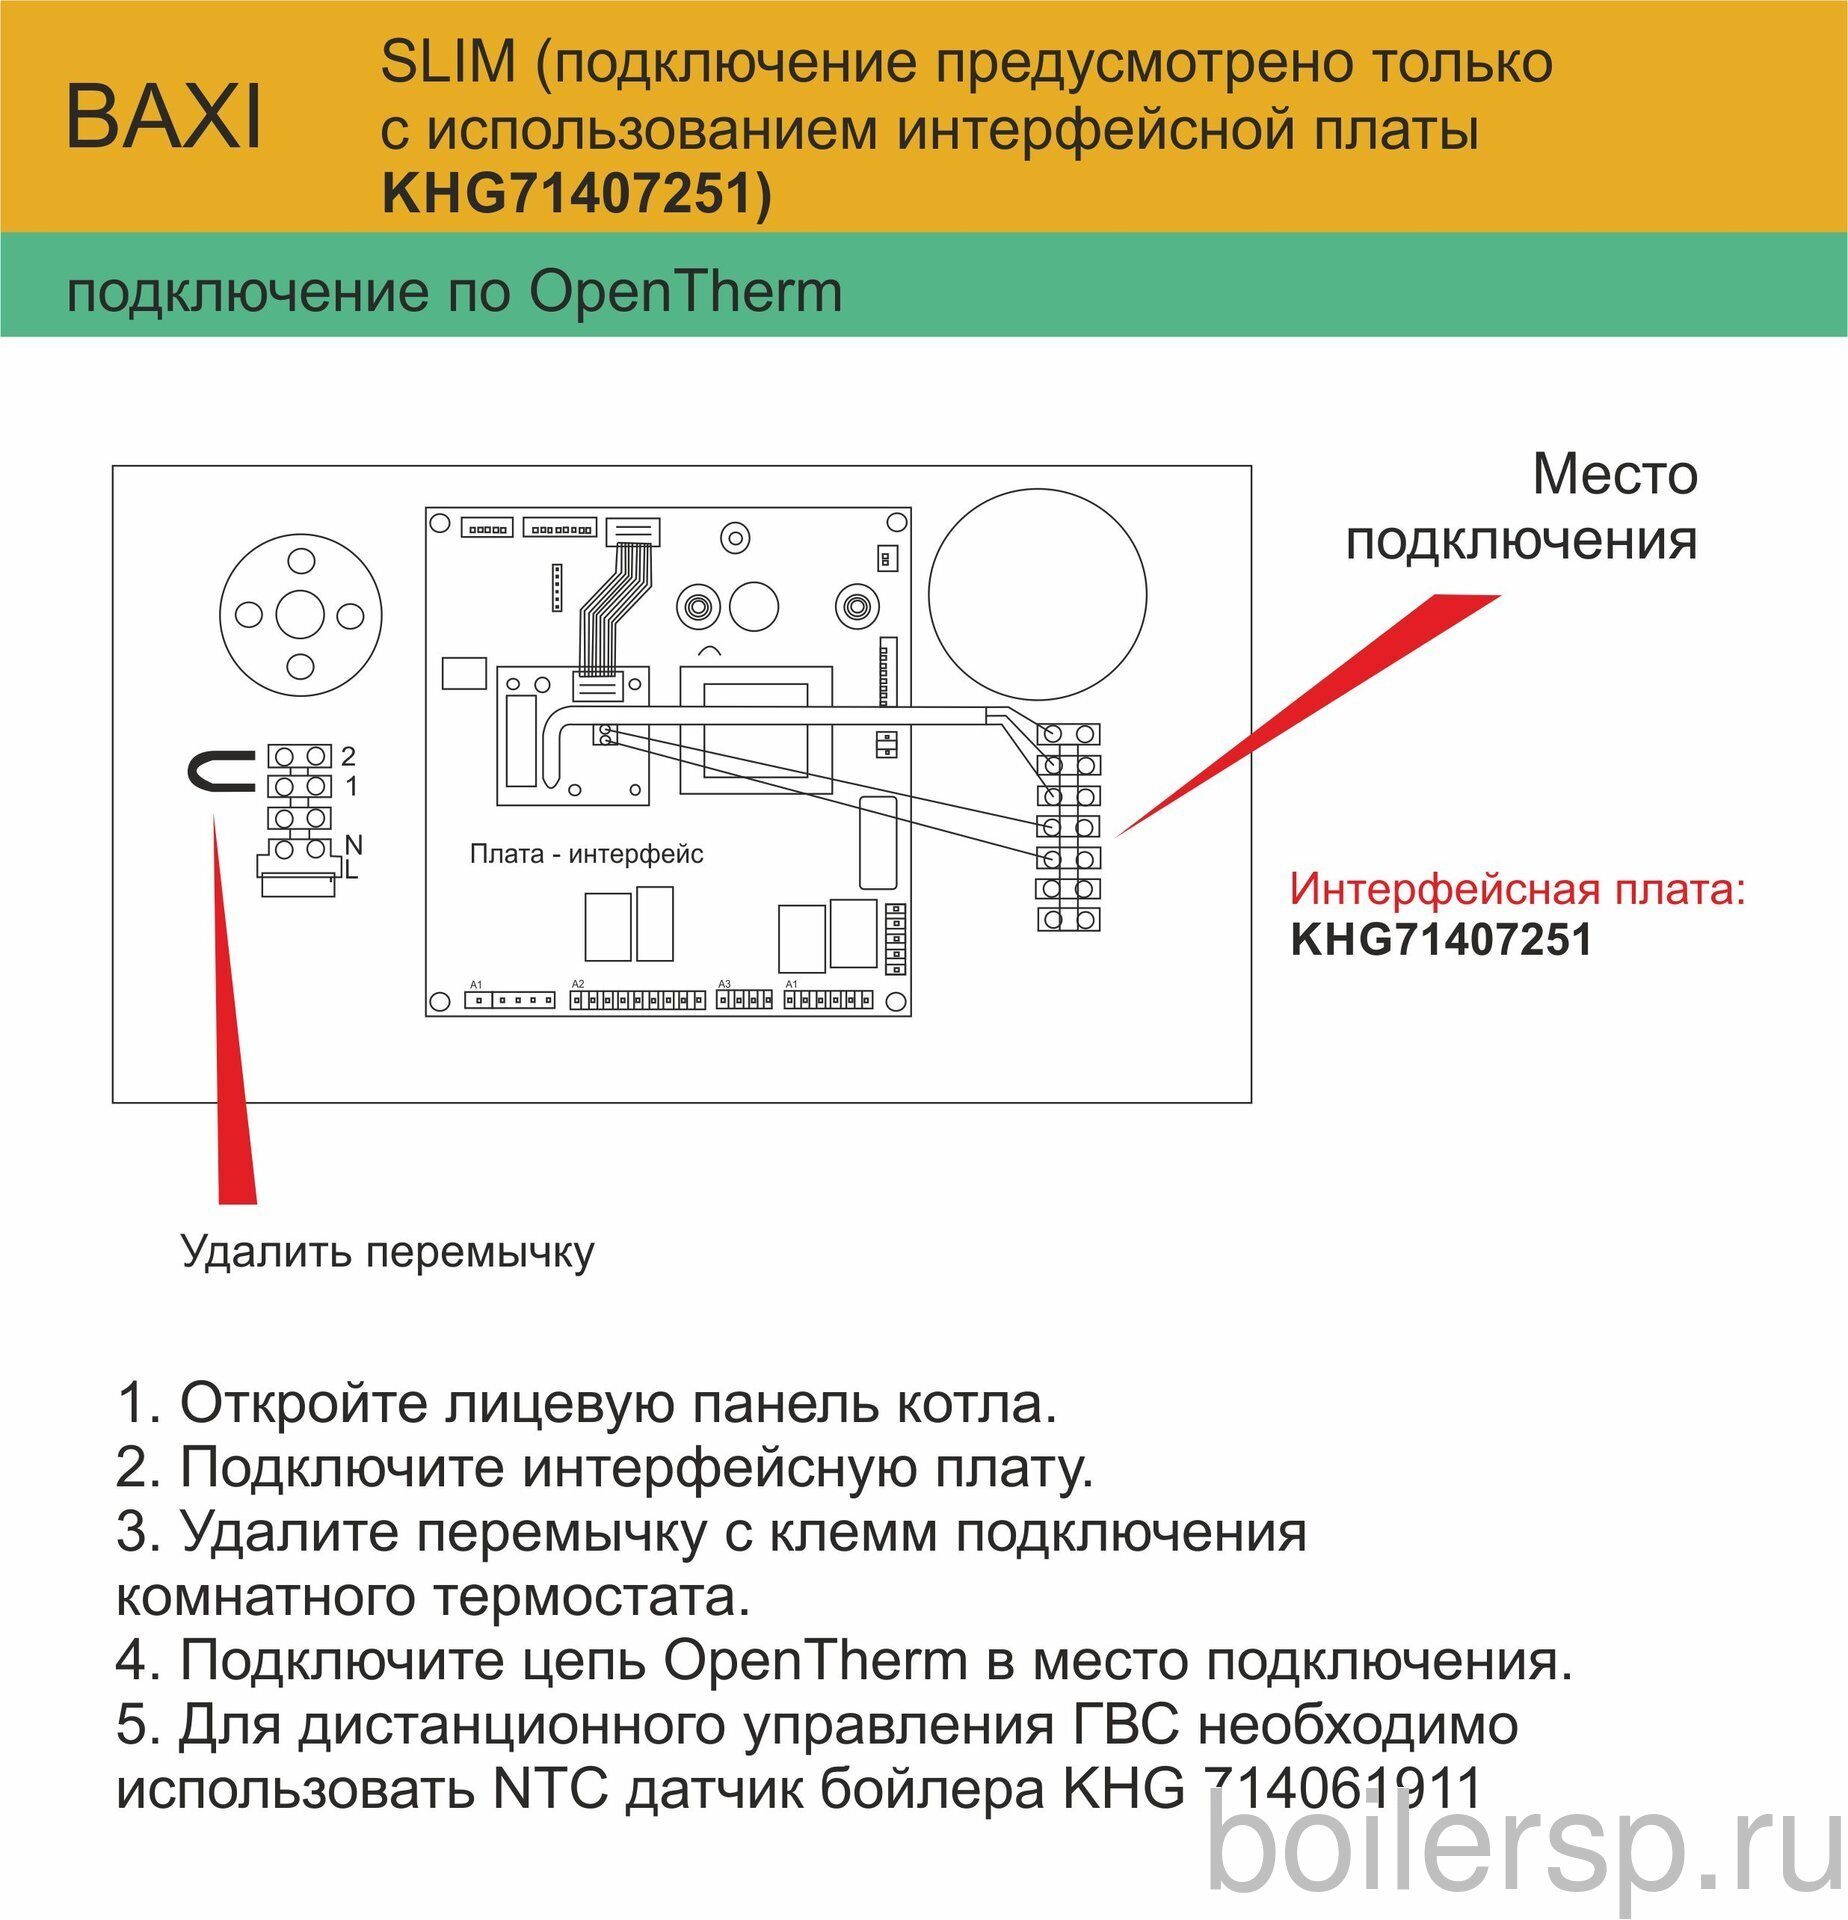 Термостат комнатный Baxi KHG 714086910 схема подключения